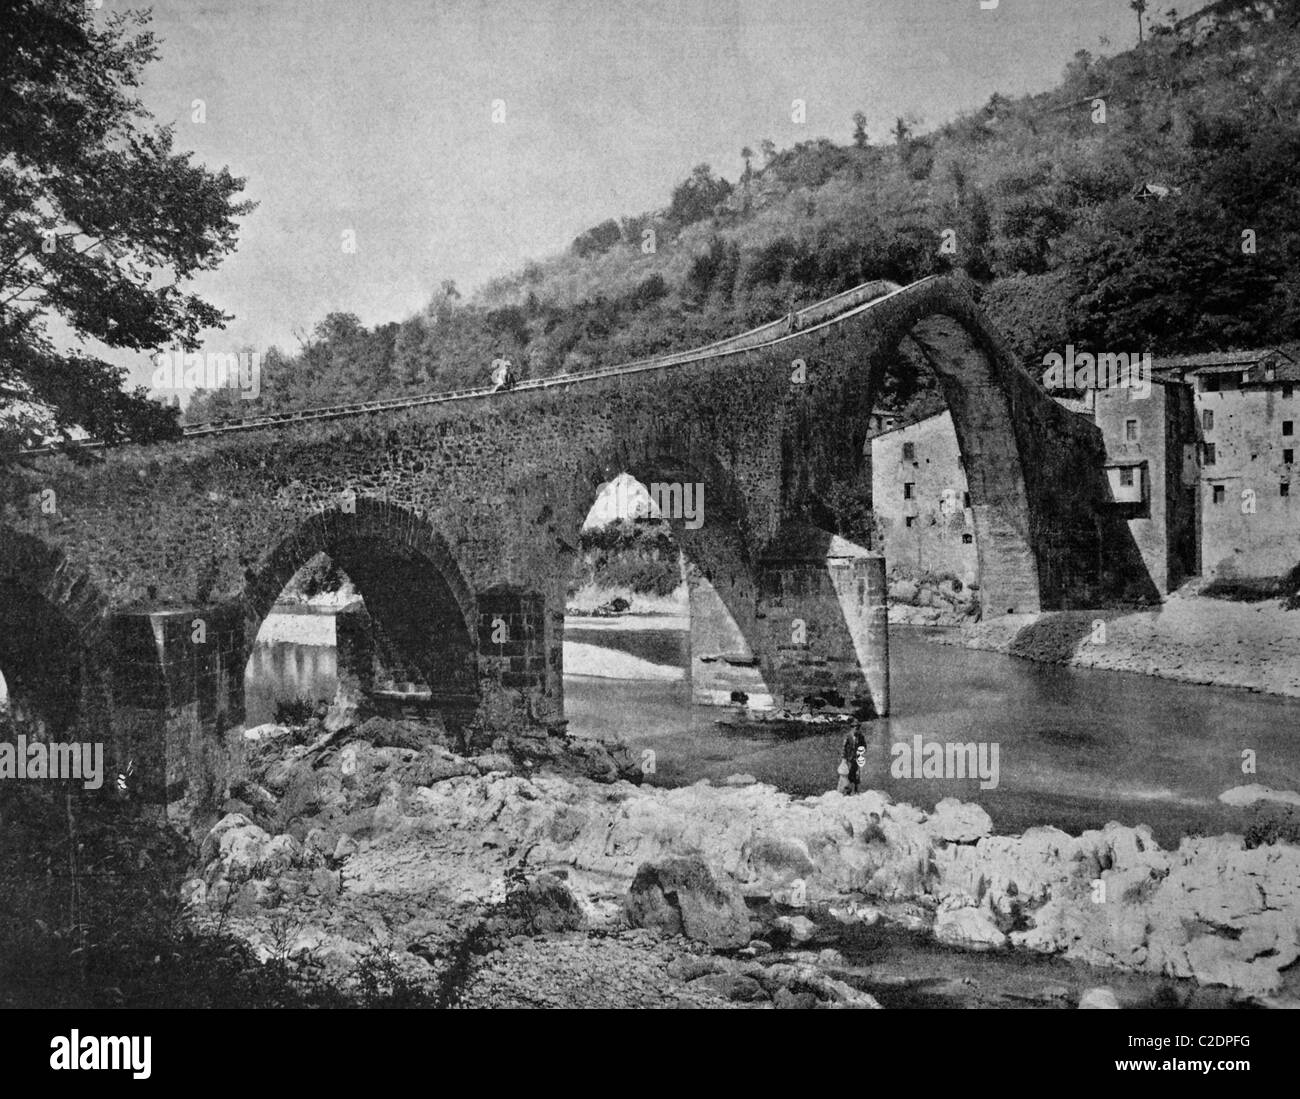 L'un des premiers tirages d'Autotype, Pont de Borgo a Mozzano, pont, 1884 photographie historique, Borgo a Mozzano, Italie, Europe Banque D'Images